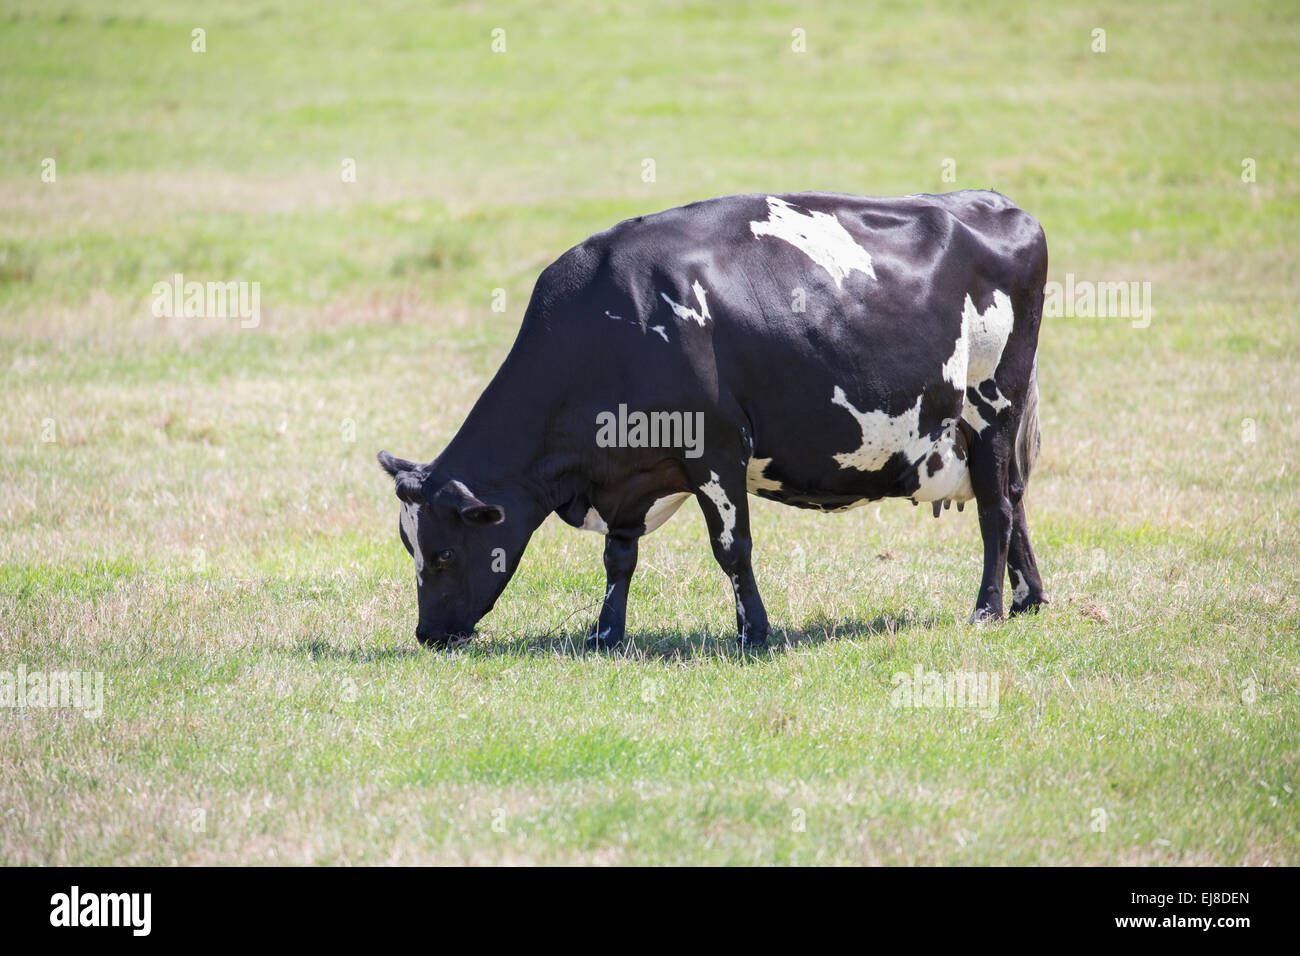 Grazing cow Stock Photo